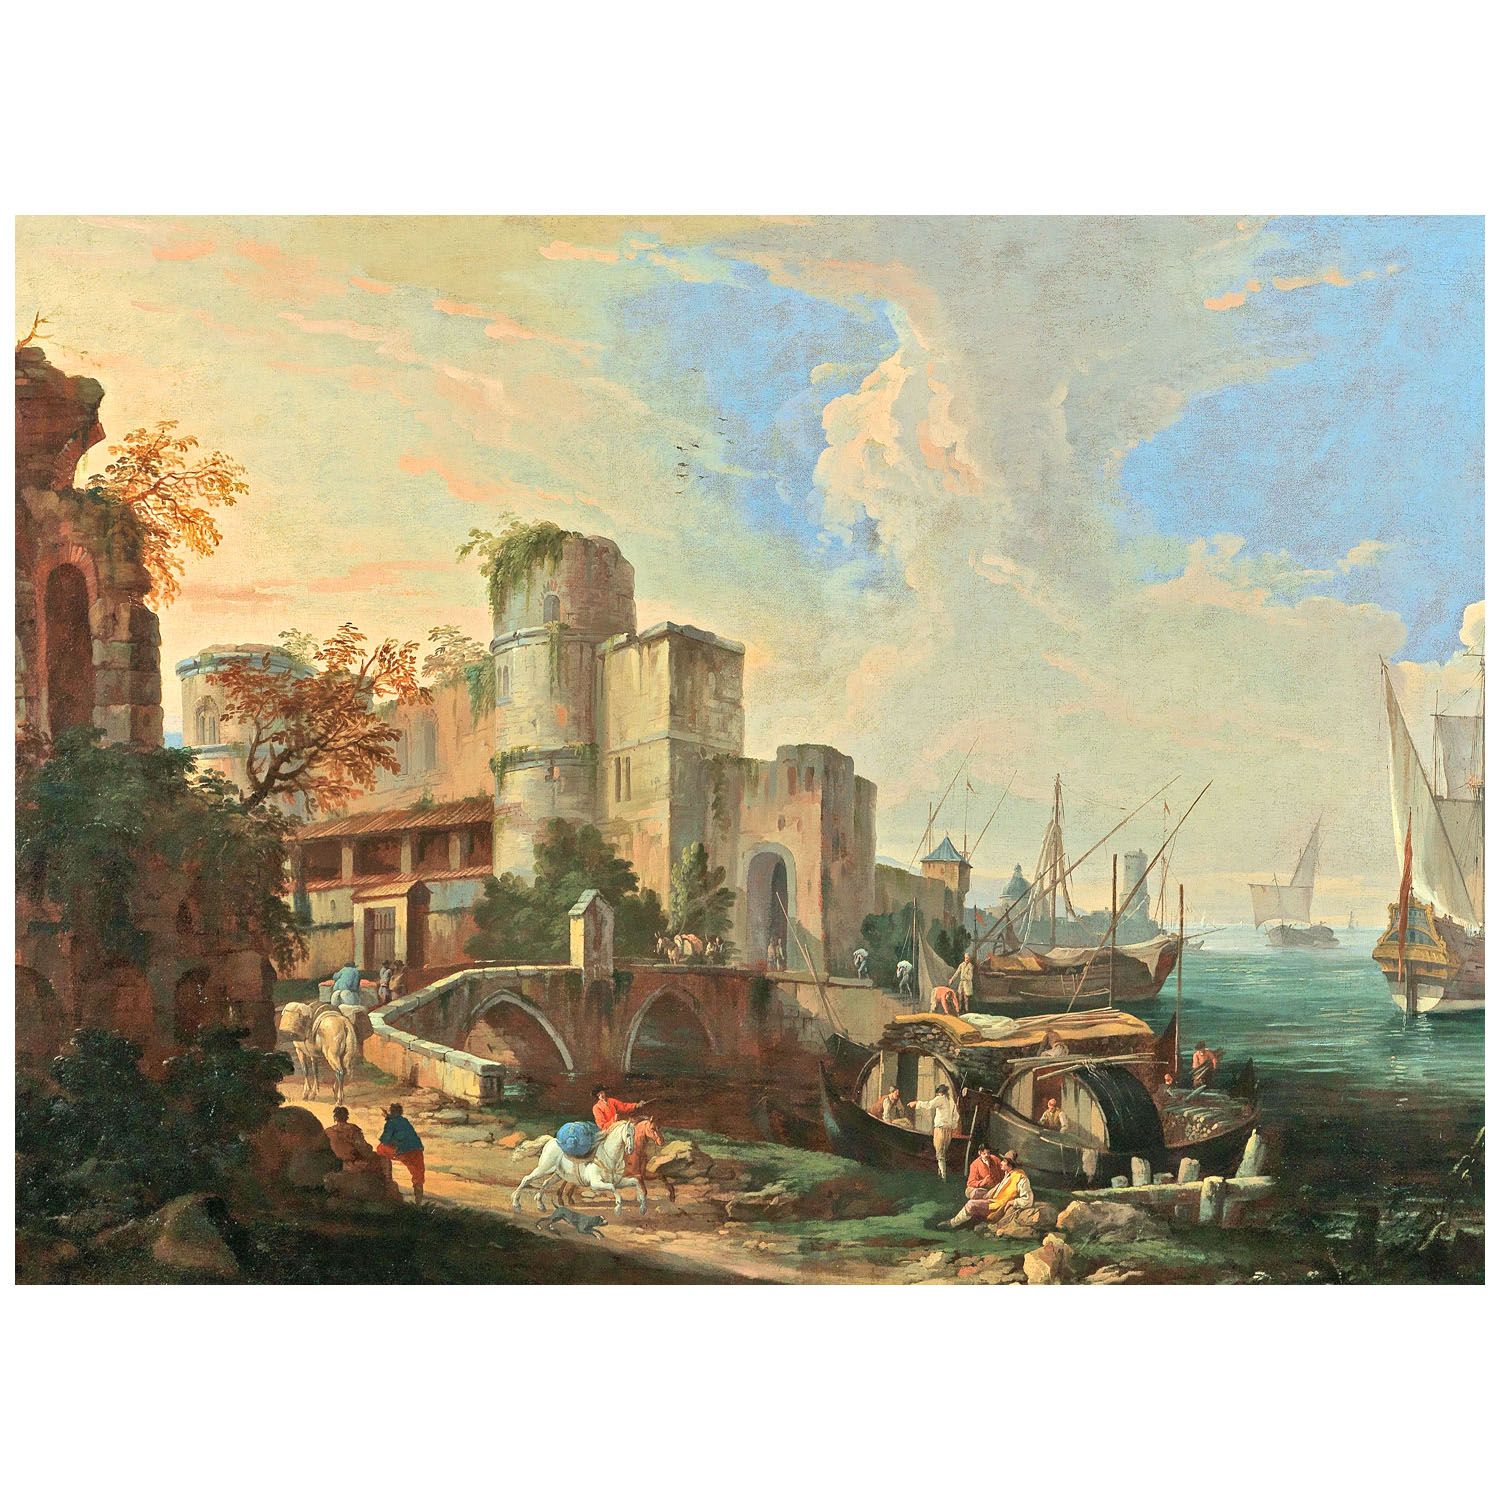 Luca Carlevarijs. Scena portuale idealizzata. 1717. Private collection